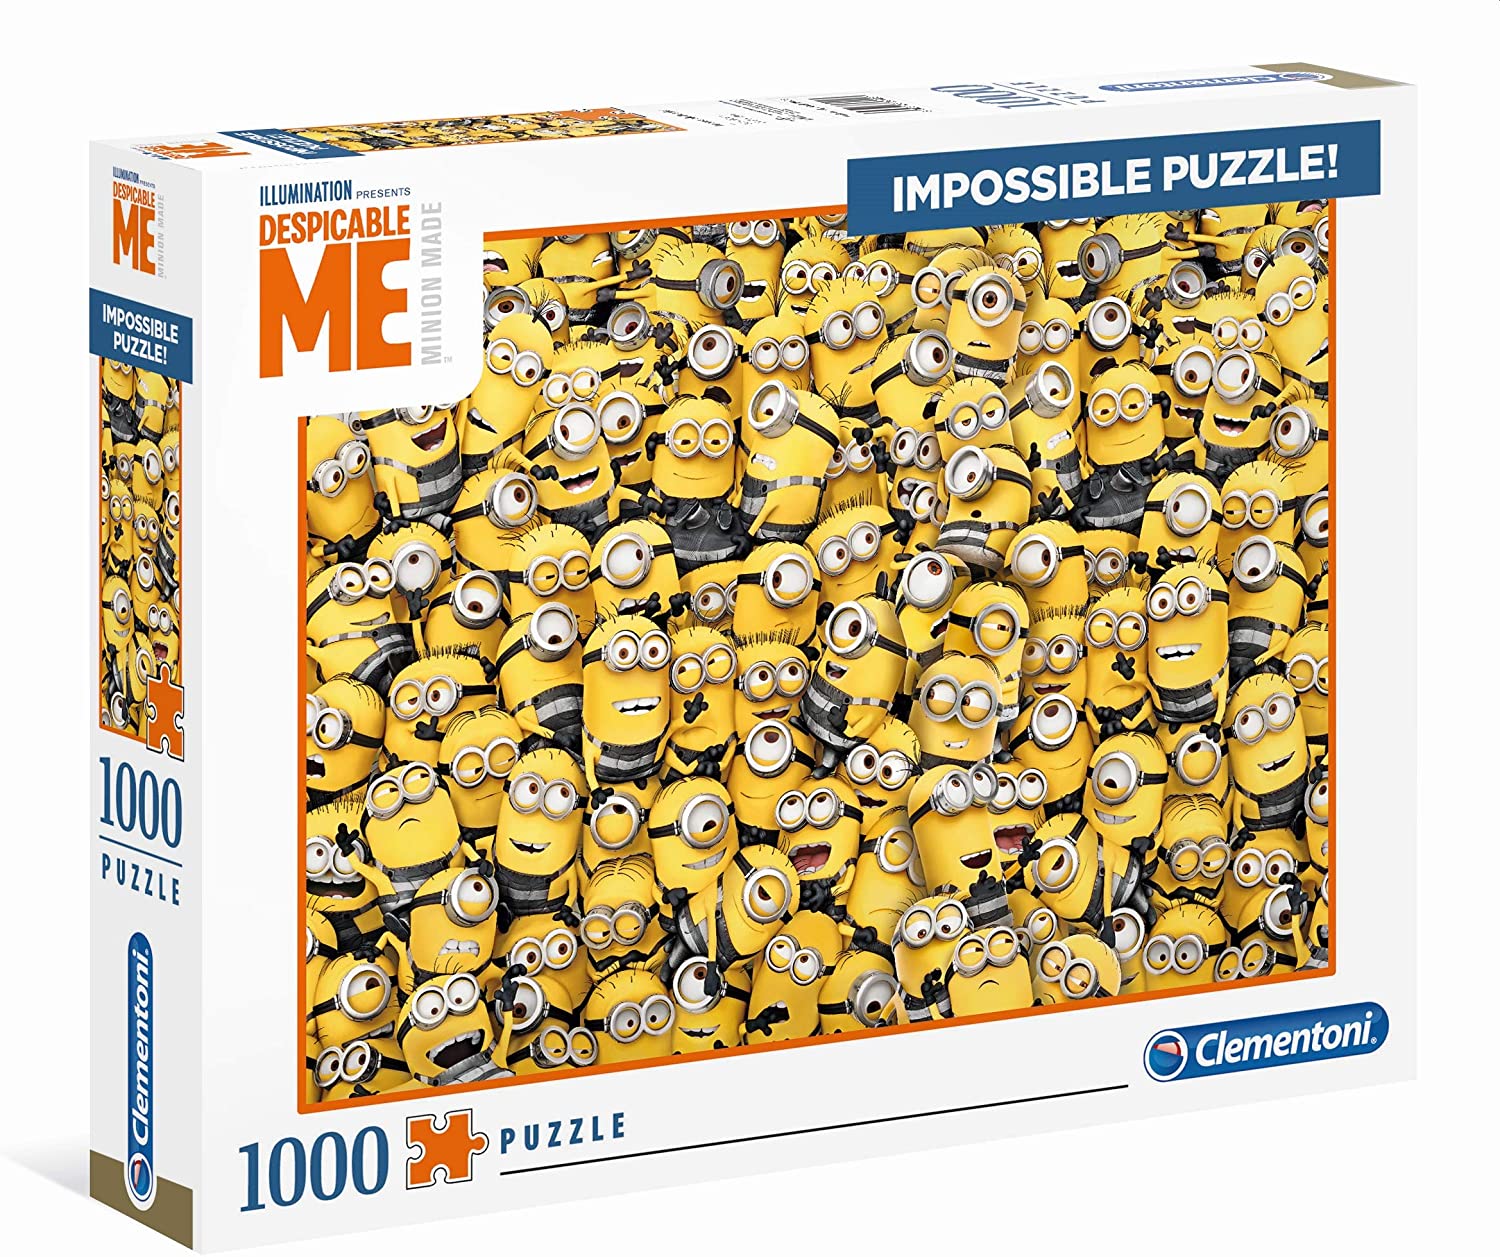 Clementoni - Despicable Me Impossible Jigsaw Puzzle (1000 Pieces